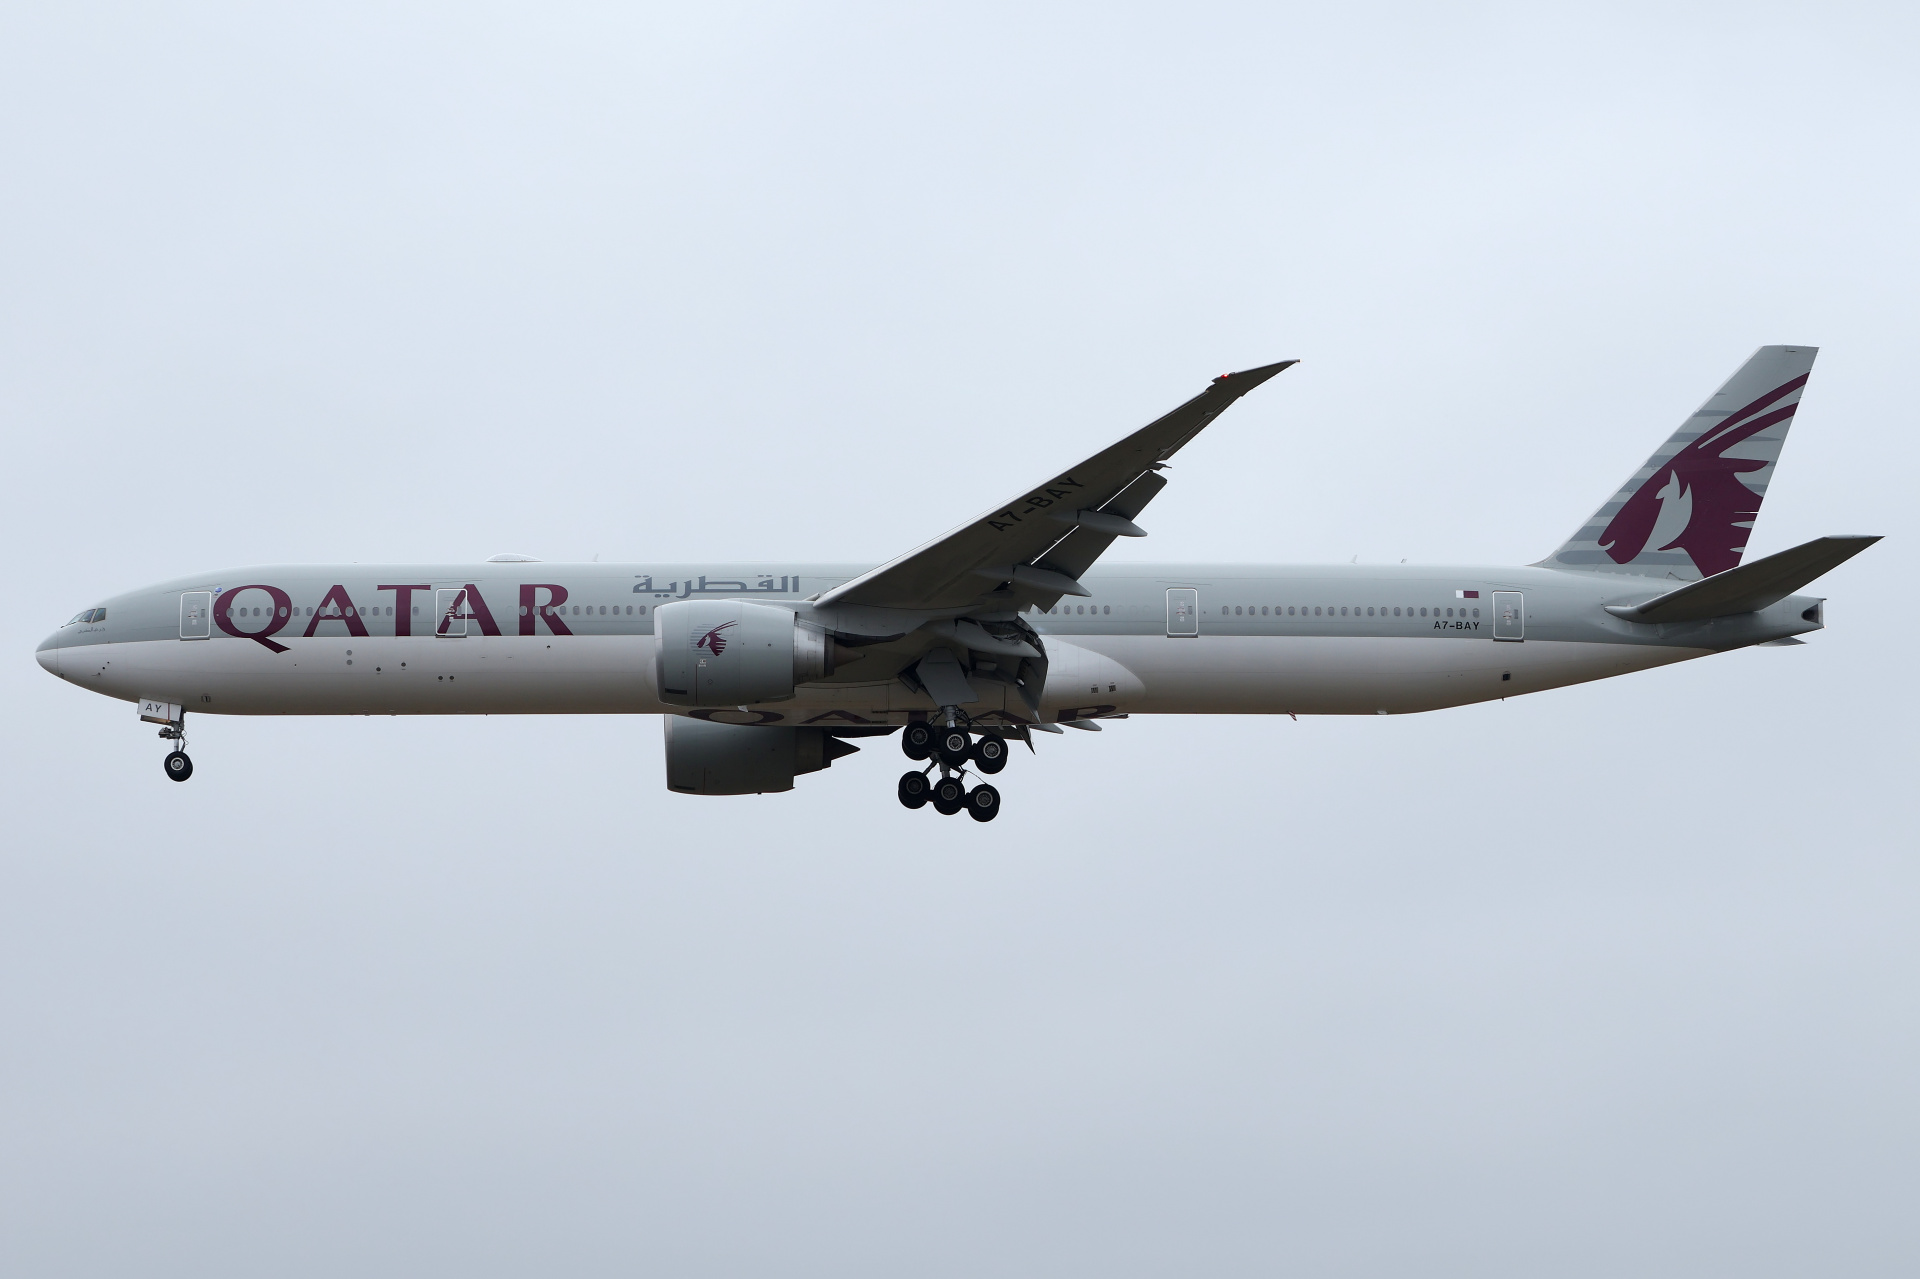 A7-BAY (Aircraft » EPWA Spotting » Boeing 777-300ER » Qatar Airways)